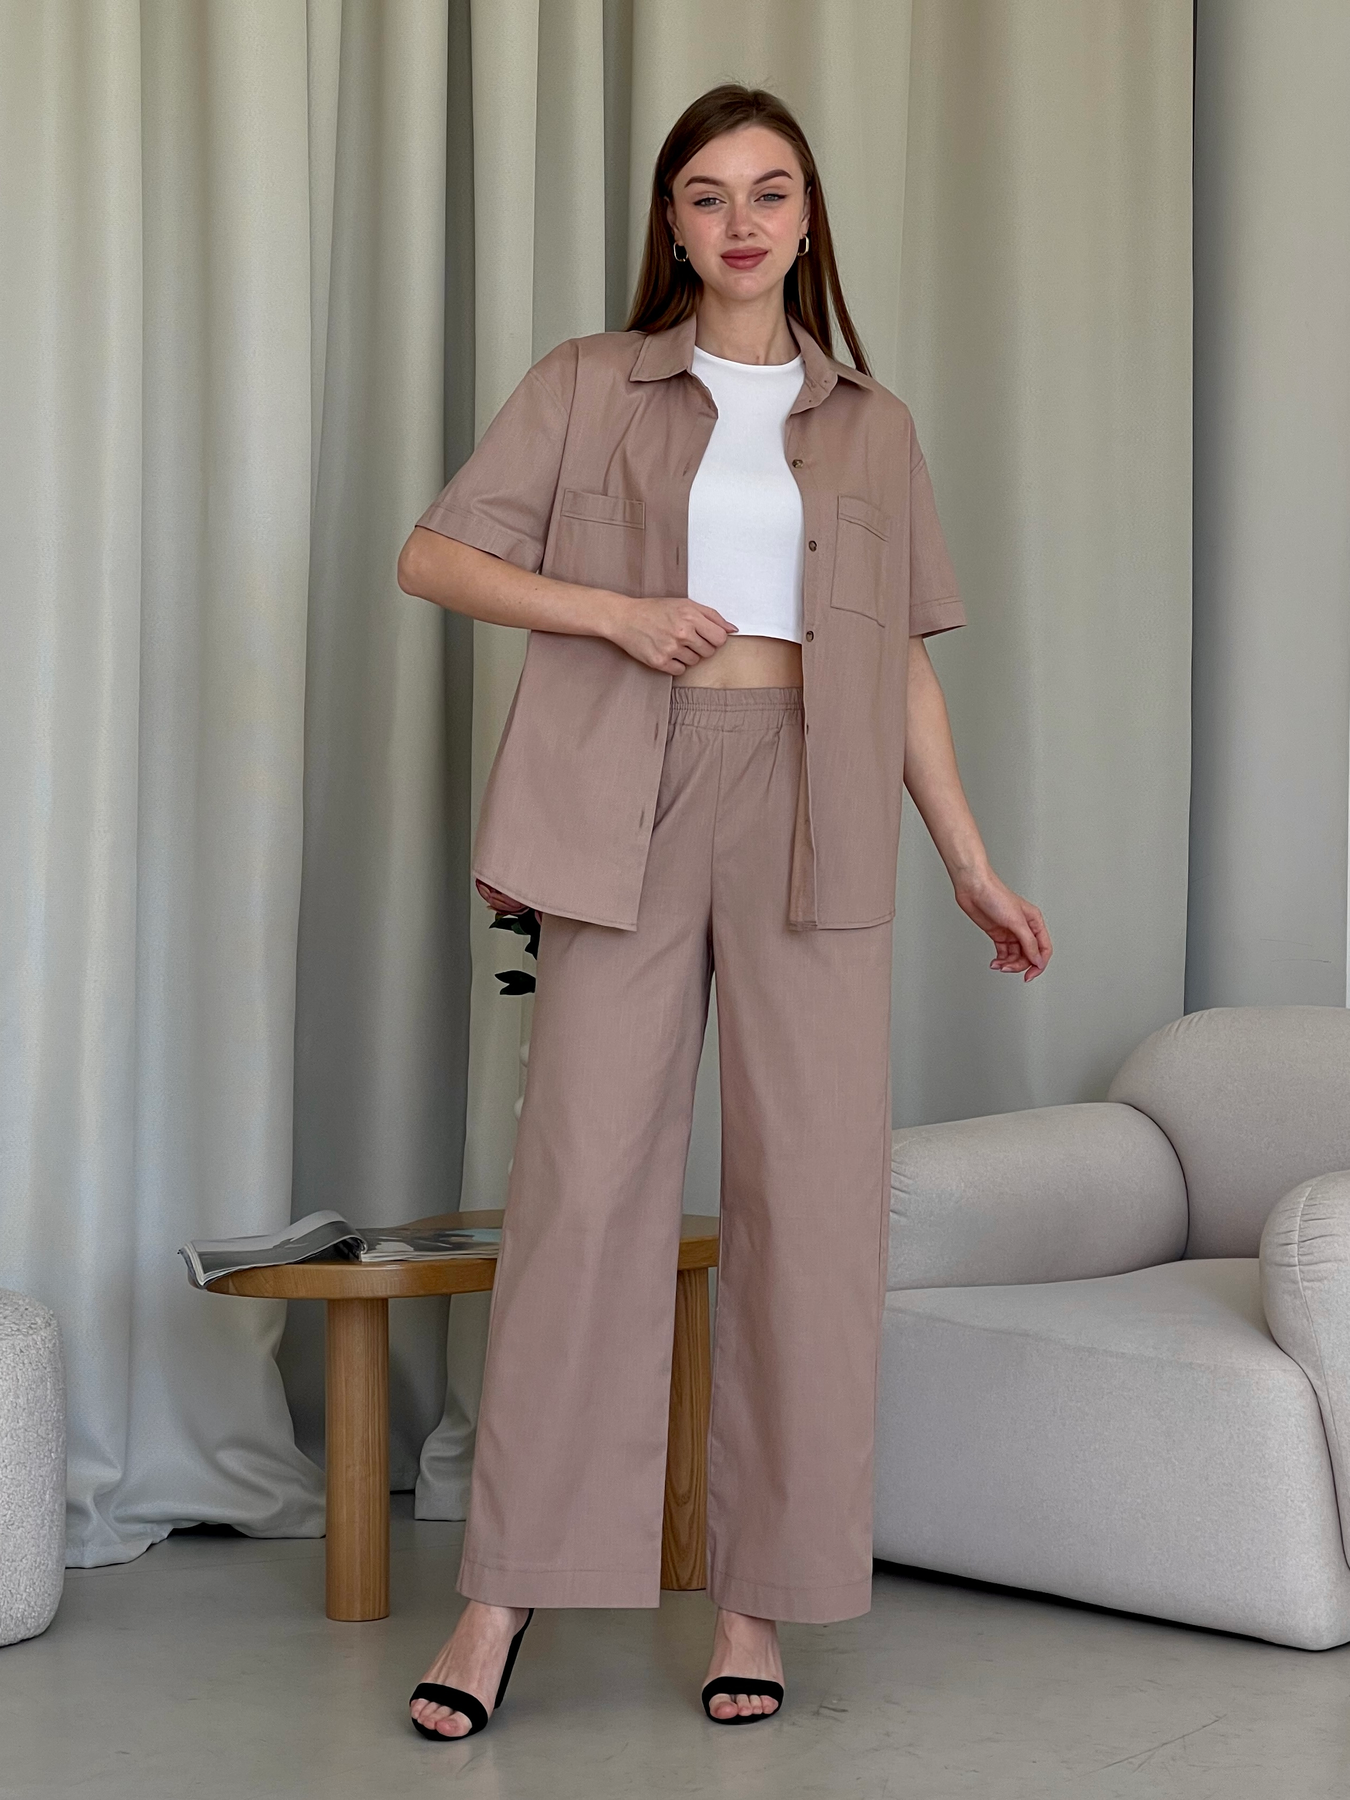 Купить Льняной костюм с штанами палаццо и рубашкой бежевый Лорен 100001204 размер 42-44 (S-M) в интернет-магазине